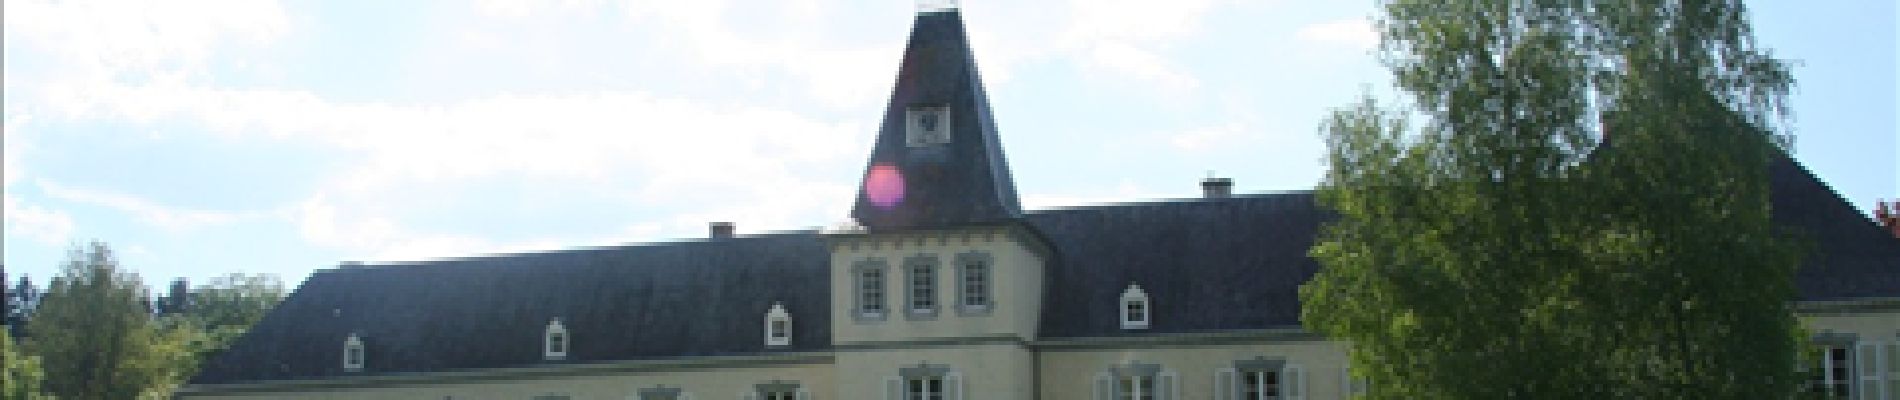 Point d'intérêt Tellin - Château de Resteigne - Photo